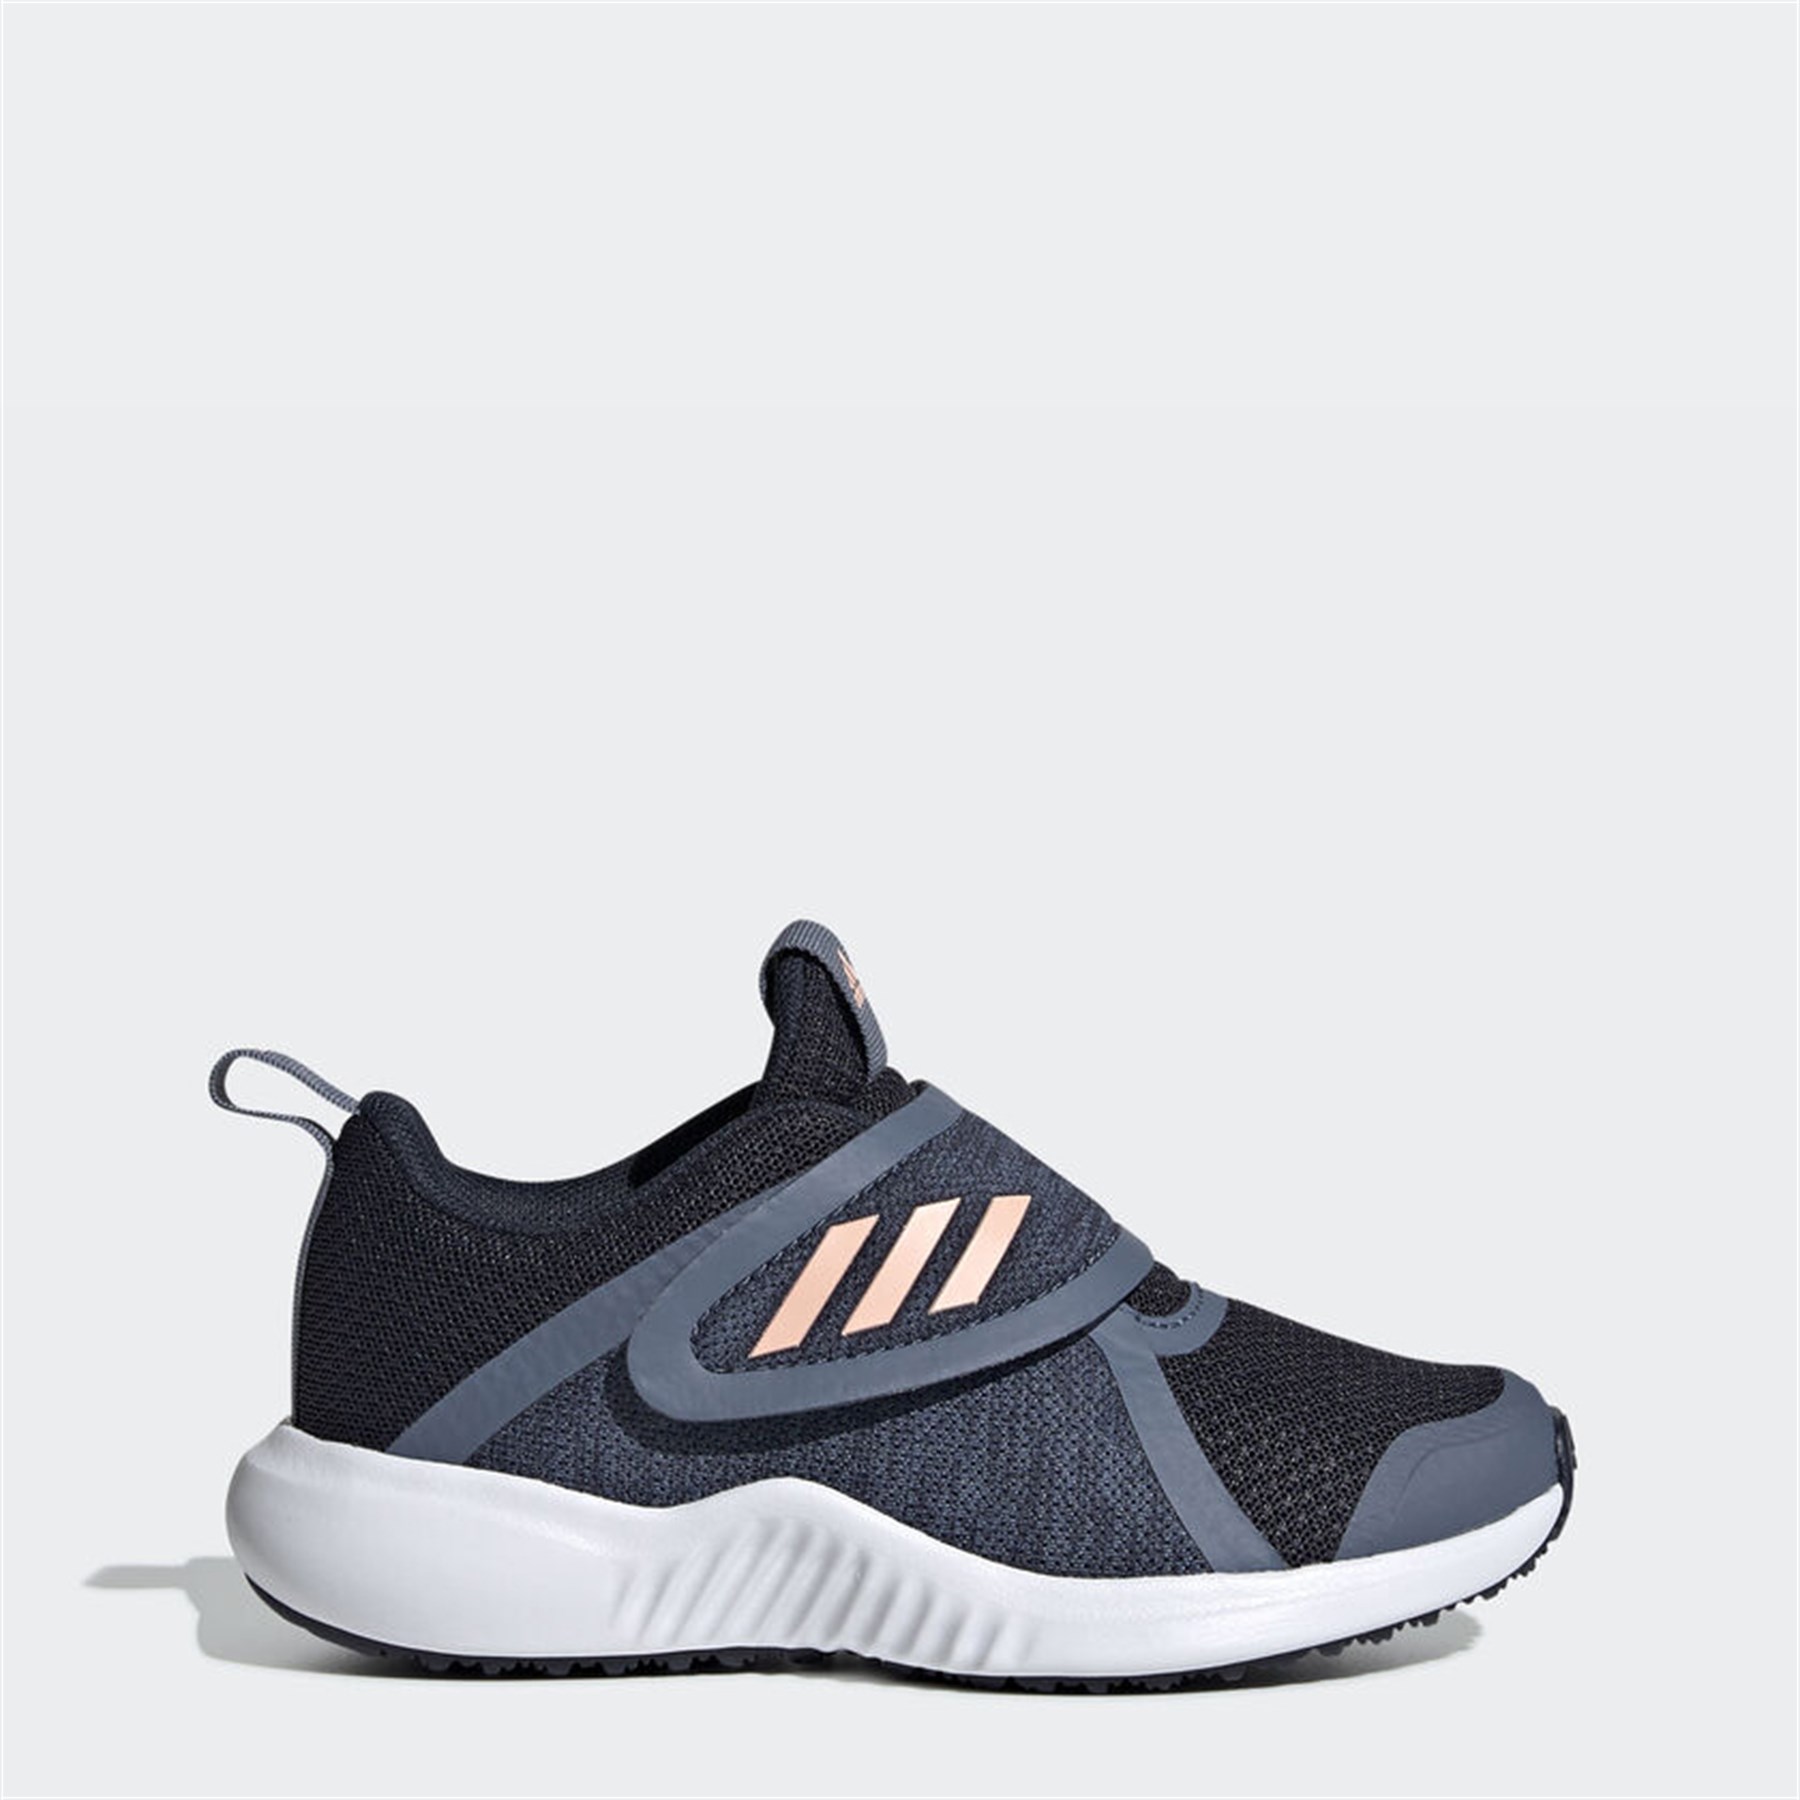 Adidas Çocuk Koşu - Yürüyüş Spor Ayakkabı G27141 Fortarun X Cf K